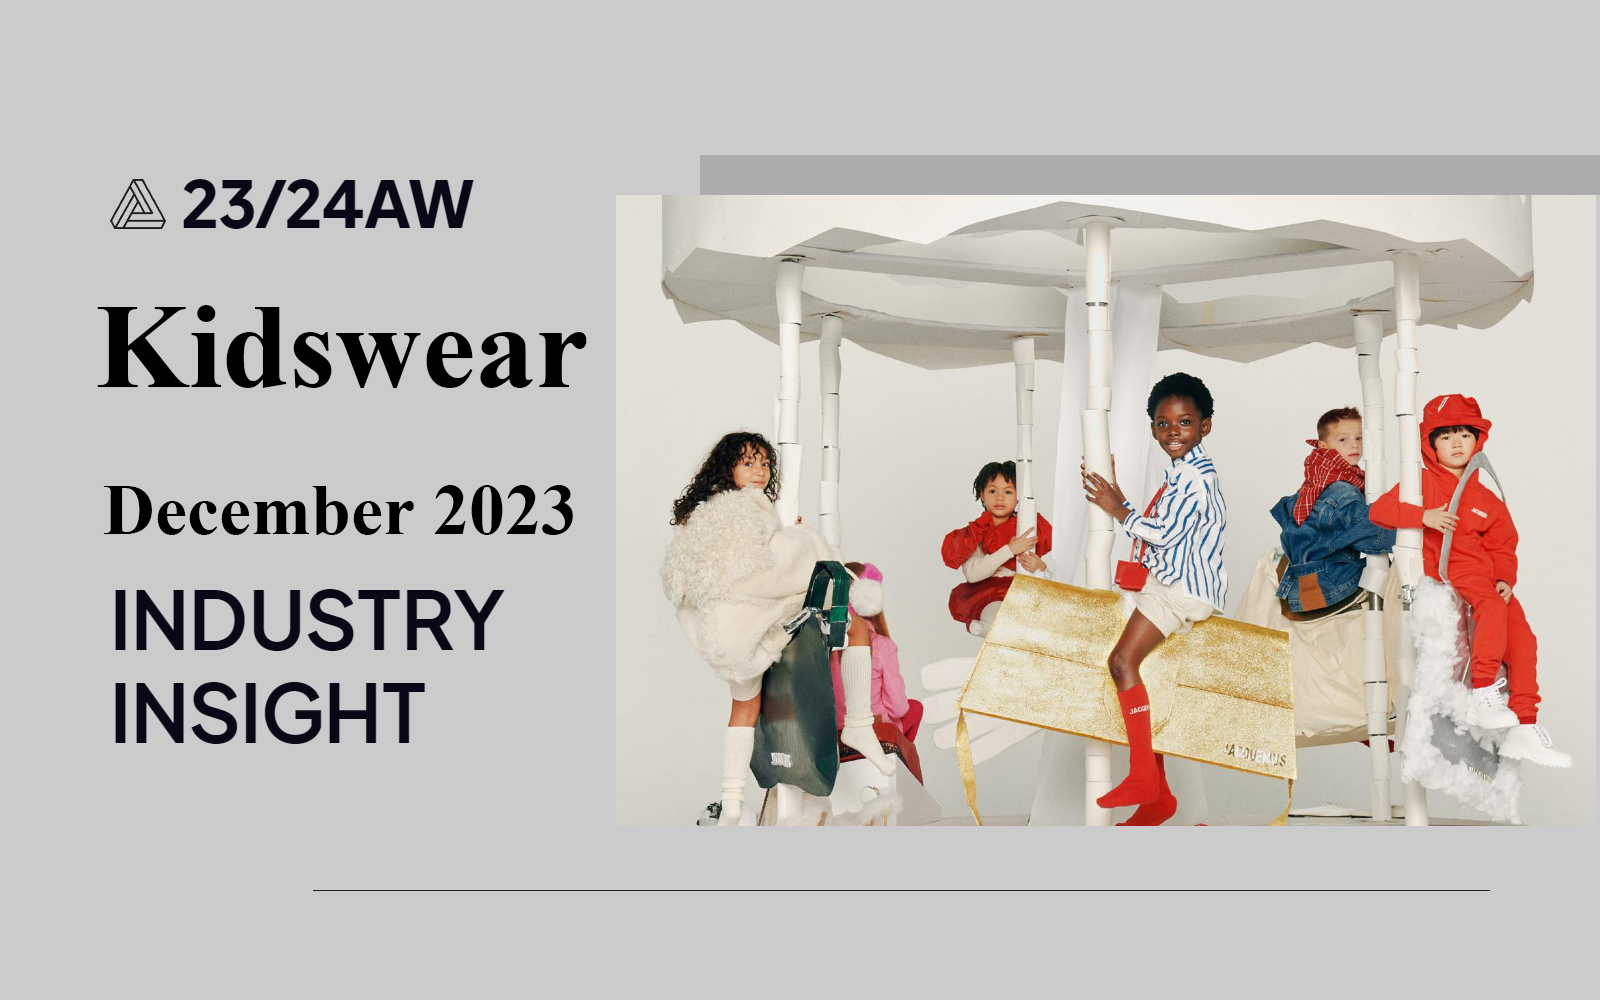 Kidswear -- The Industry Insight in December